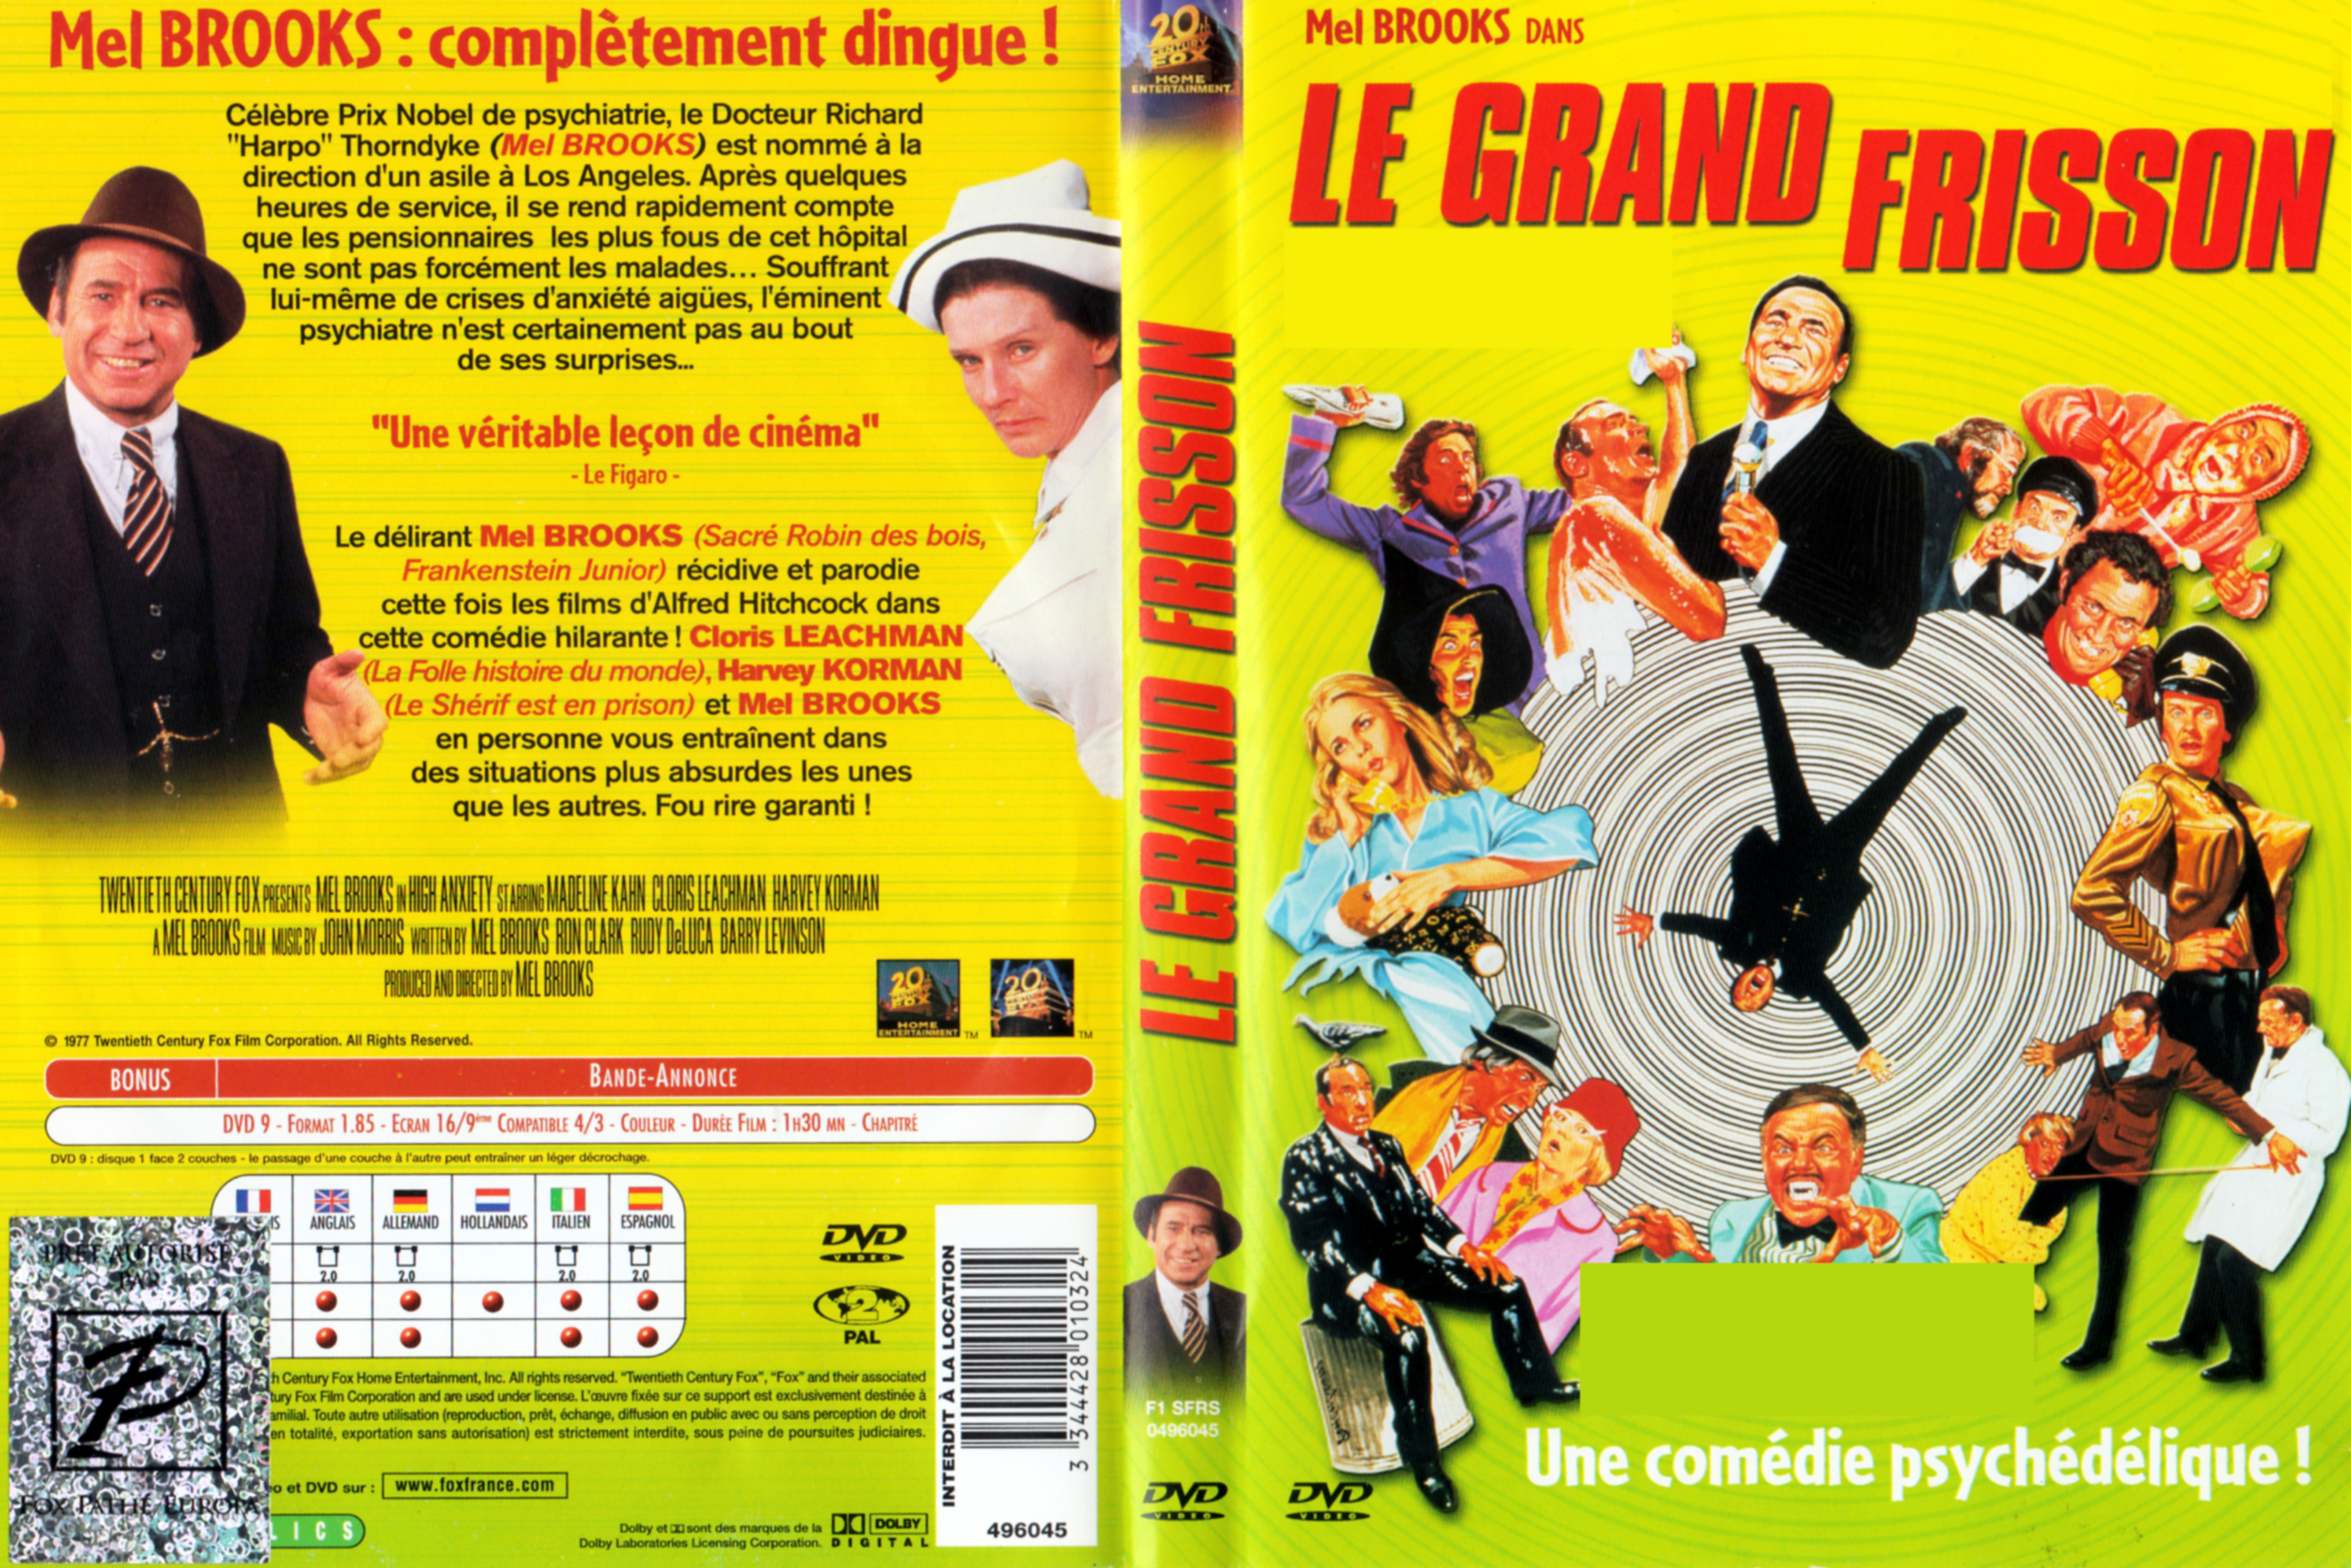 Jaquette DVD Le grand frisson